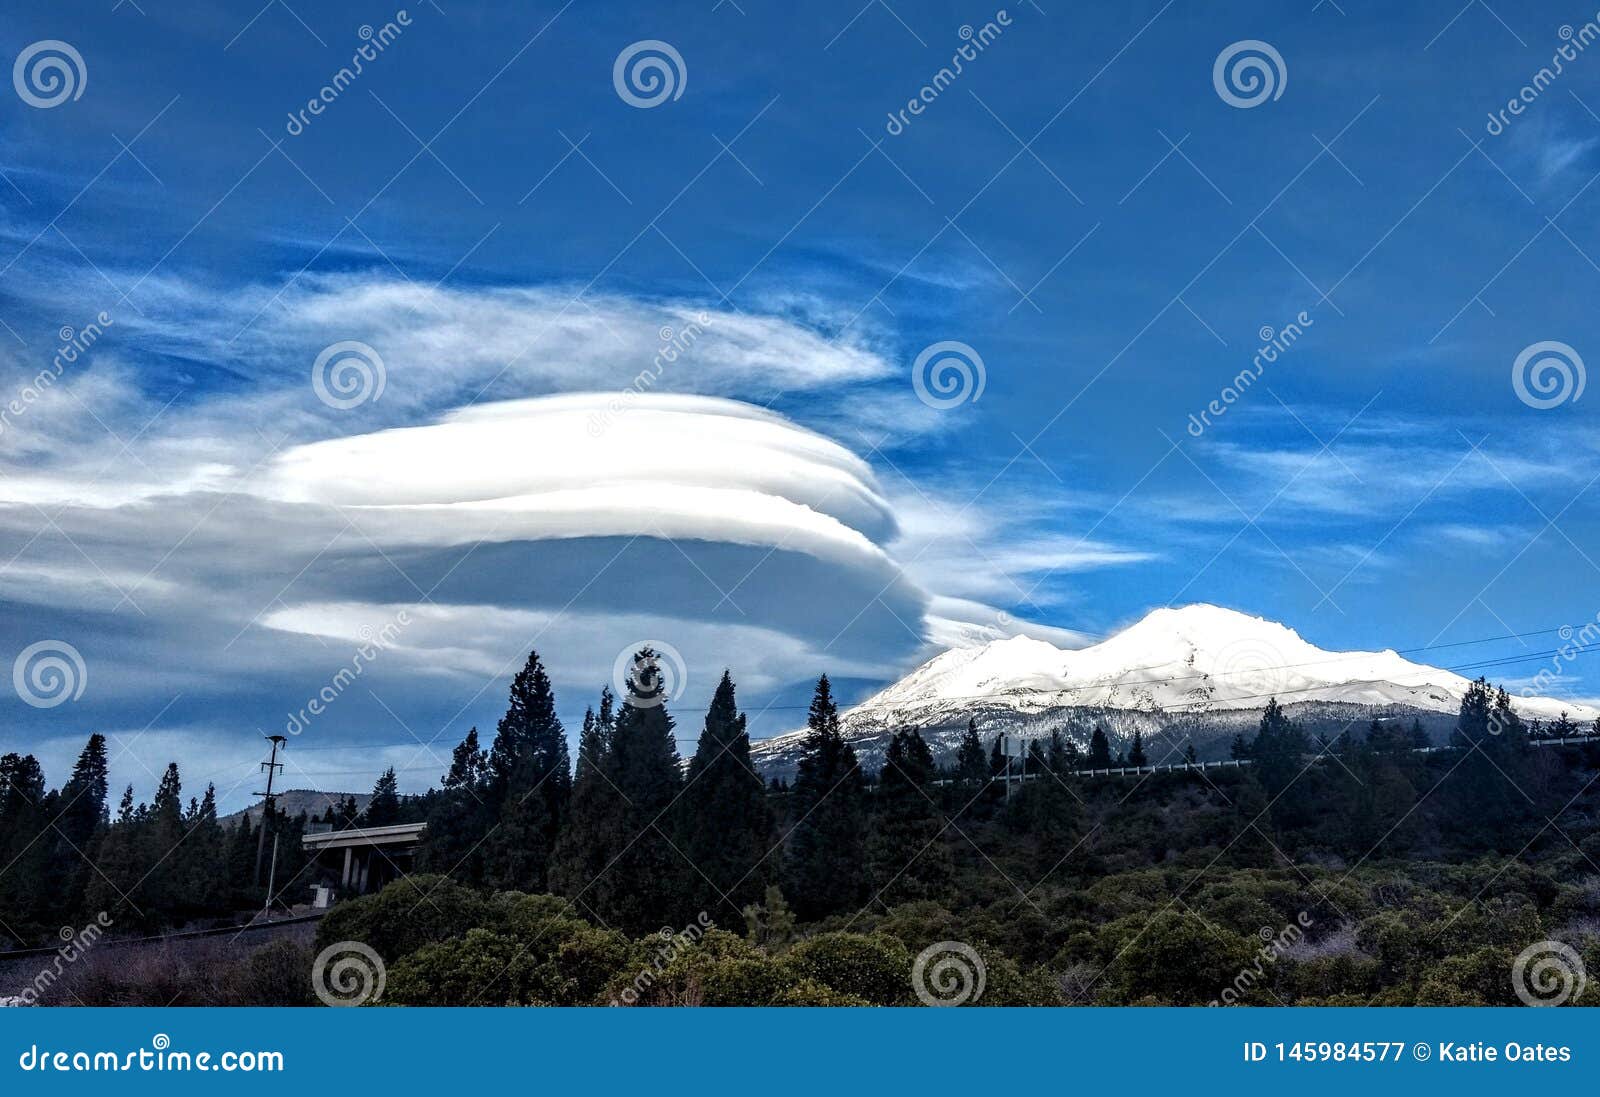 lenticular cloud over mt. shasta, ca